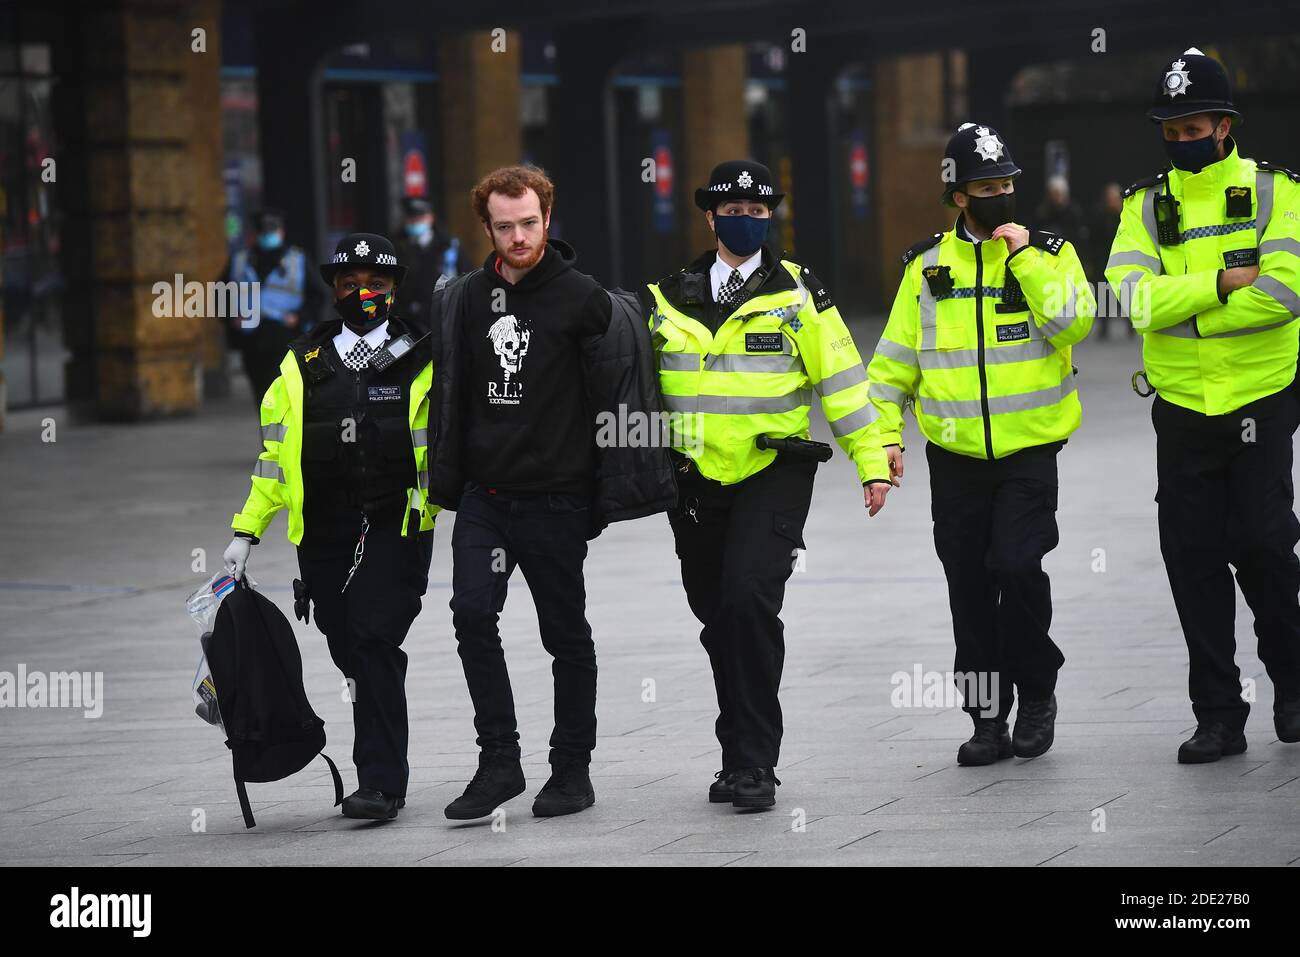 La police a emprisonné un homme lors d'une manifestation anti-verrouillage à Kings Cross St Pancras, Londres. Banque D'Images